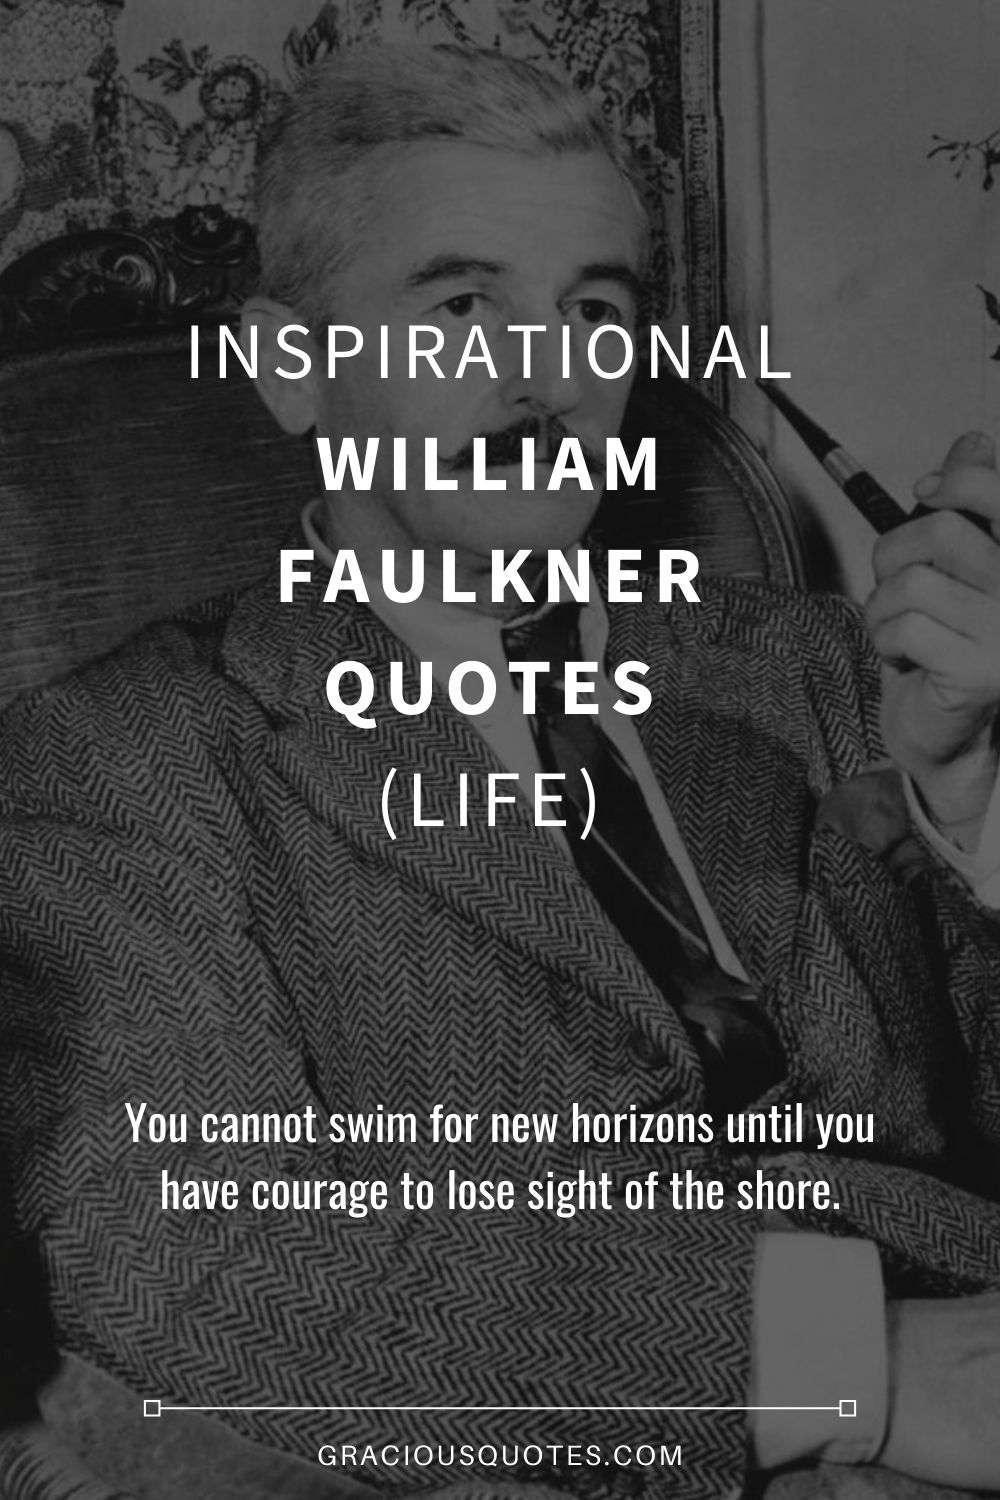 Inspirational William Faulkner Quotes (LIFE) - Gracious Quotes